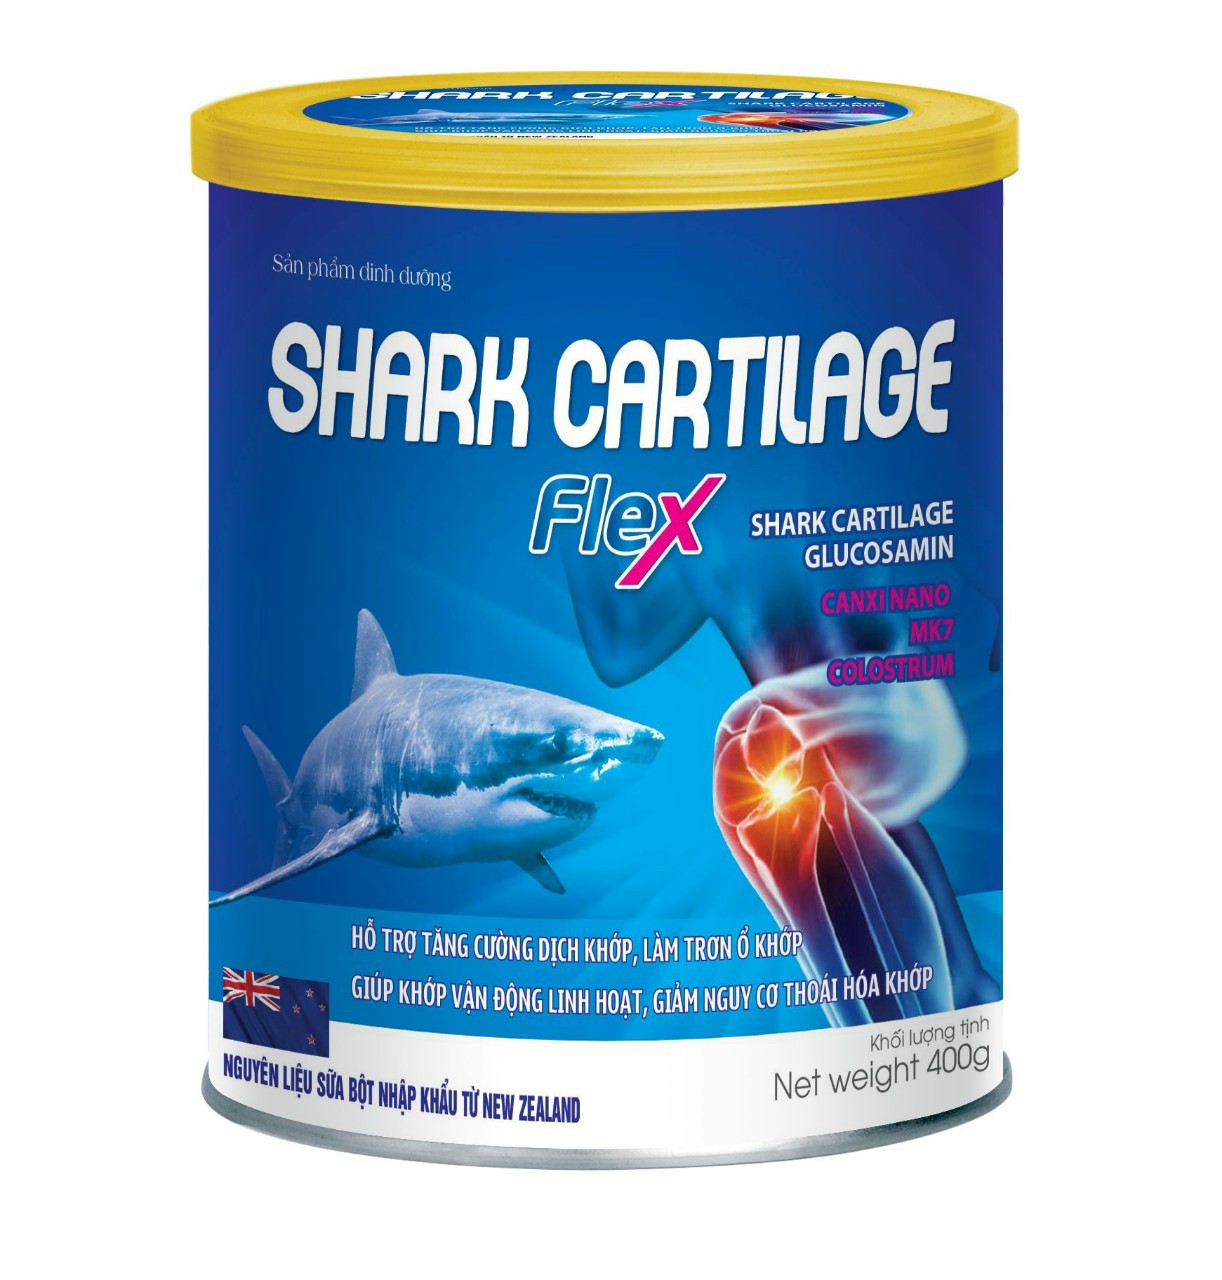 Sữa Bột Xương Khớp Shark Cartilage Flex với thành phần sụn vi cá mập, glucosamine, canxi nano MK7 Hỗ trợ tăng cường dịch khớp, làm trơn ổ khớp, giúp khớp vận động linh hoạt, giảm nguy cơ thoái hóa khớp thumbnail